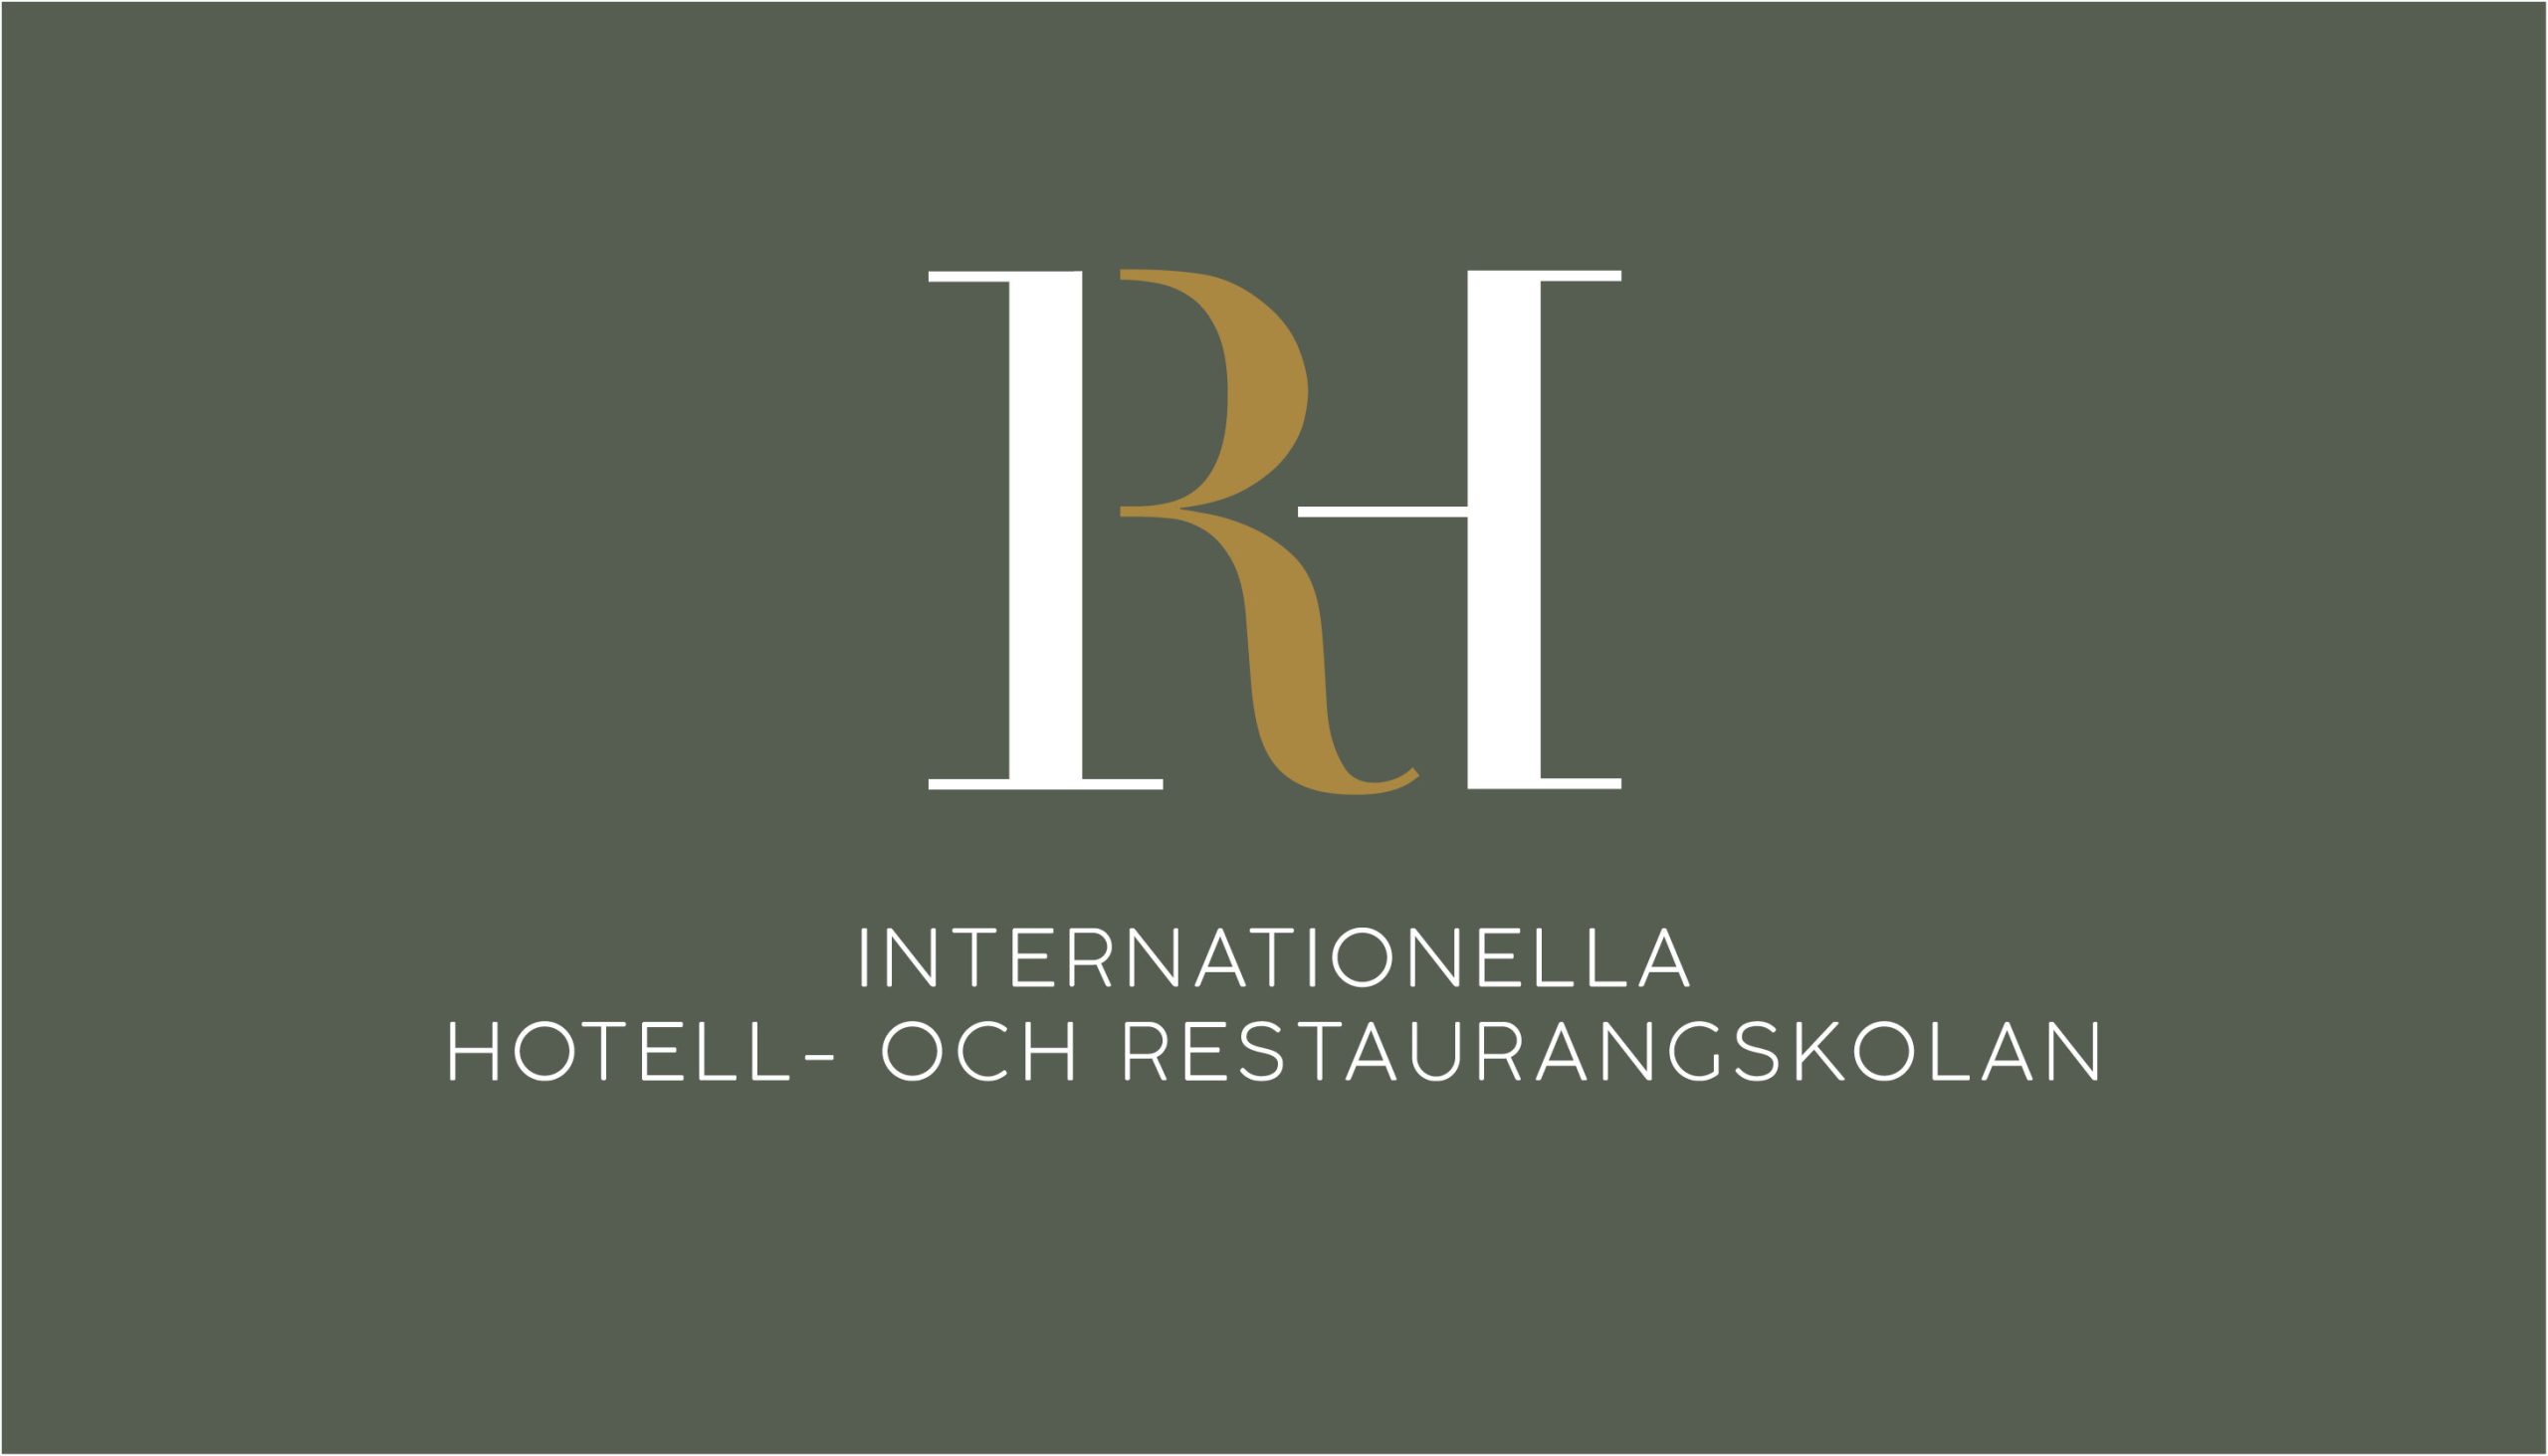 Internationella hotell och restaurangskolan logga.